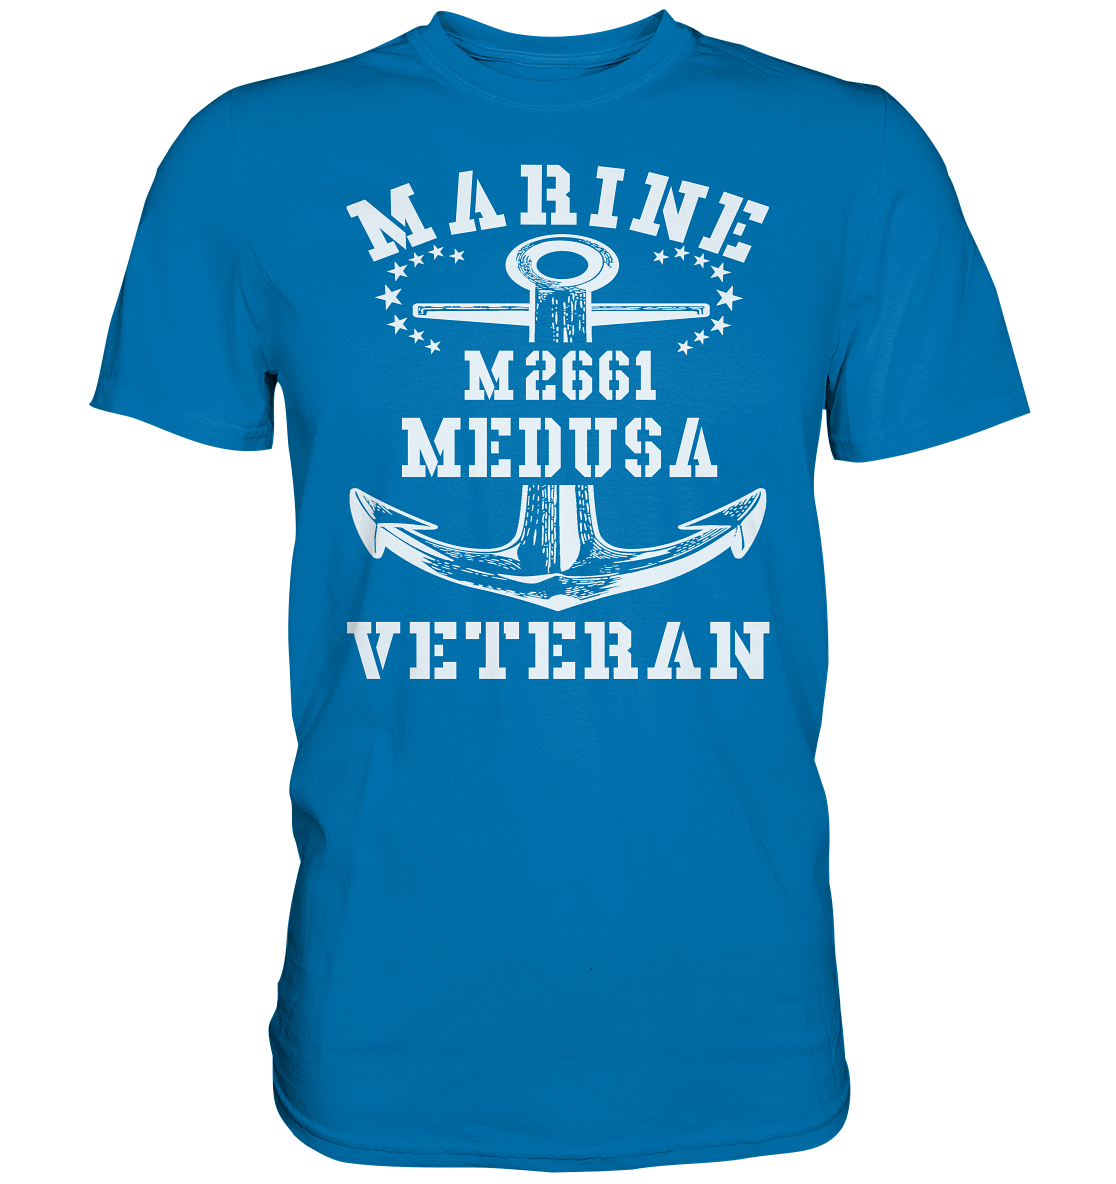 BiMi M2661 MEDUSA Marine Veteran - Premium Shirt